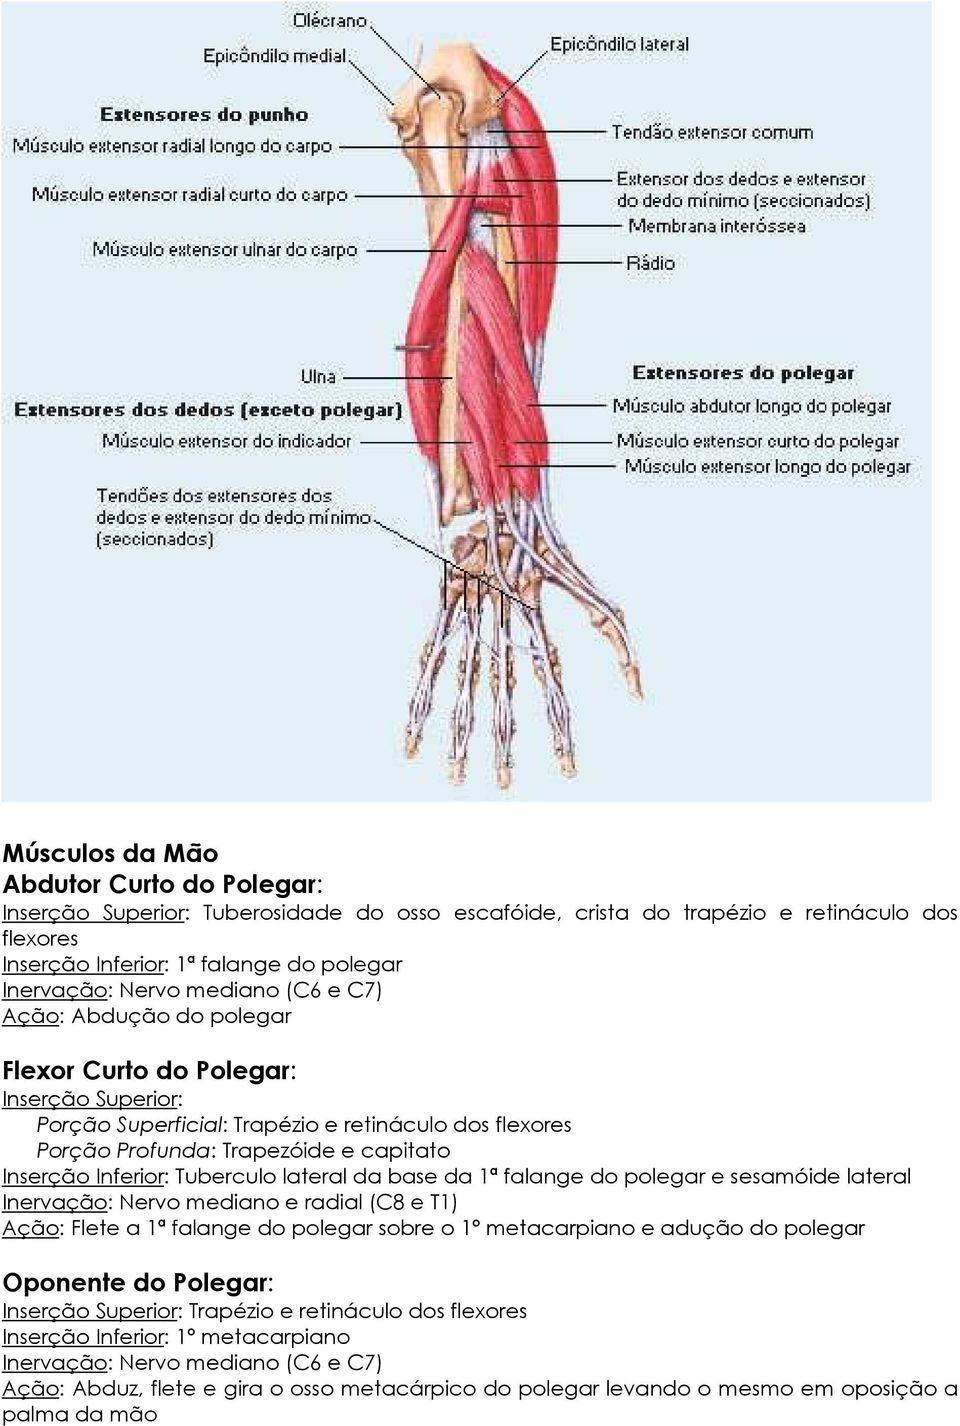 Tuberculo lateral da base da 1ª falange do polegar e sesamóide lateral Inervação: Nervo mediano e radial (C8 e T1) Ação: Flete a 1ª falange do polegar sobre o 1º metacarpiano e adução do polegar